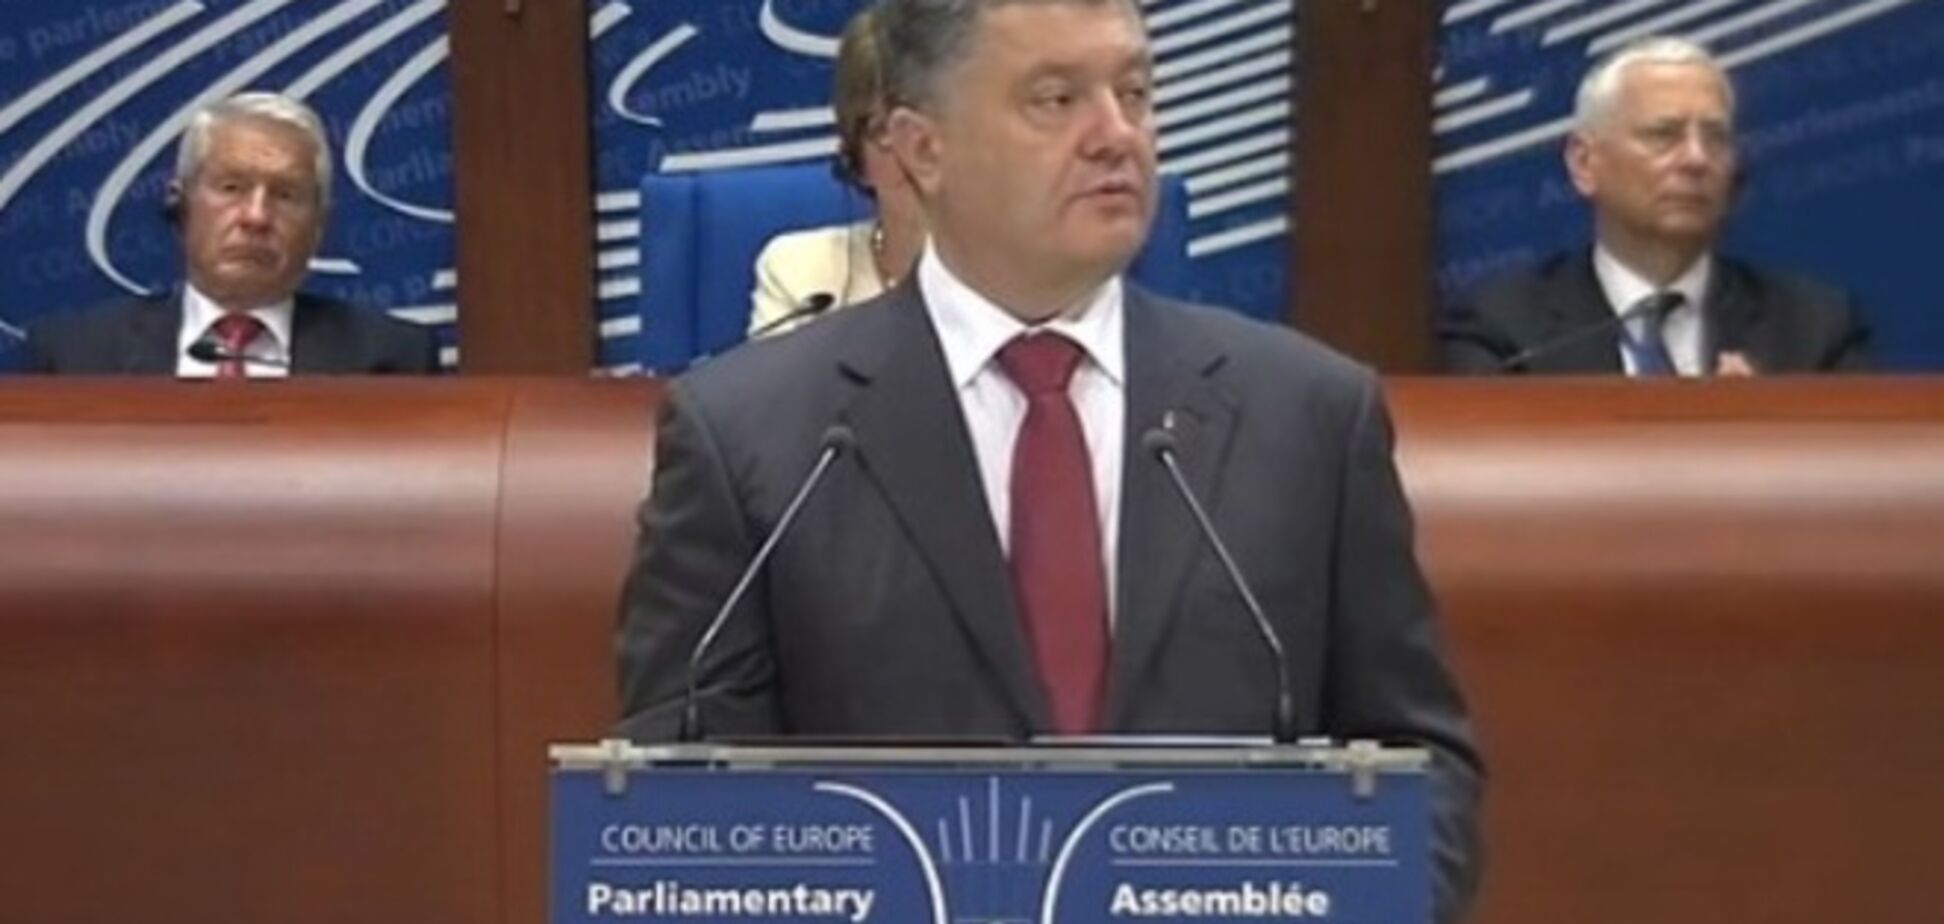 ПАСЕ рассматривает ситуацию в Украине: выступает Порошенко. Прямая трансляция